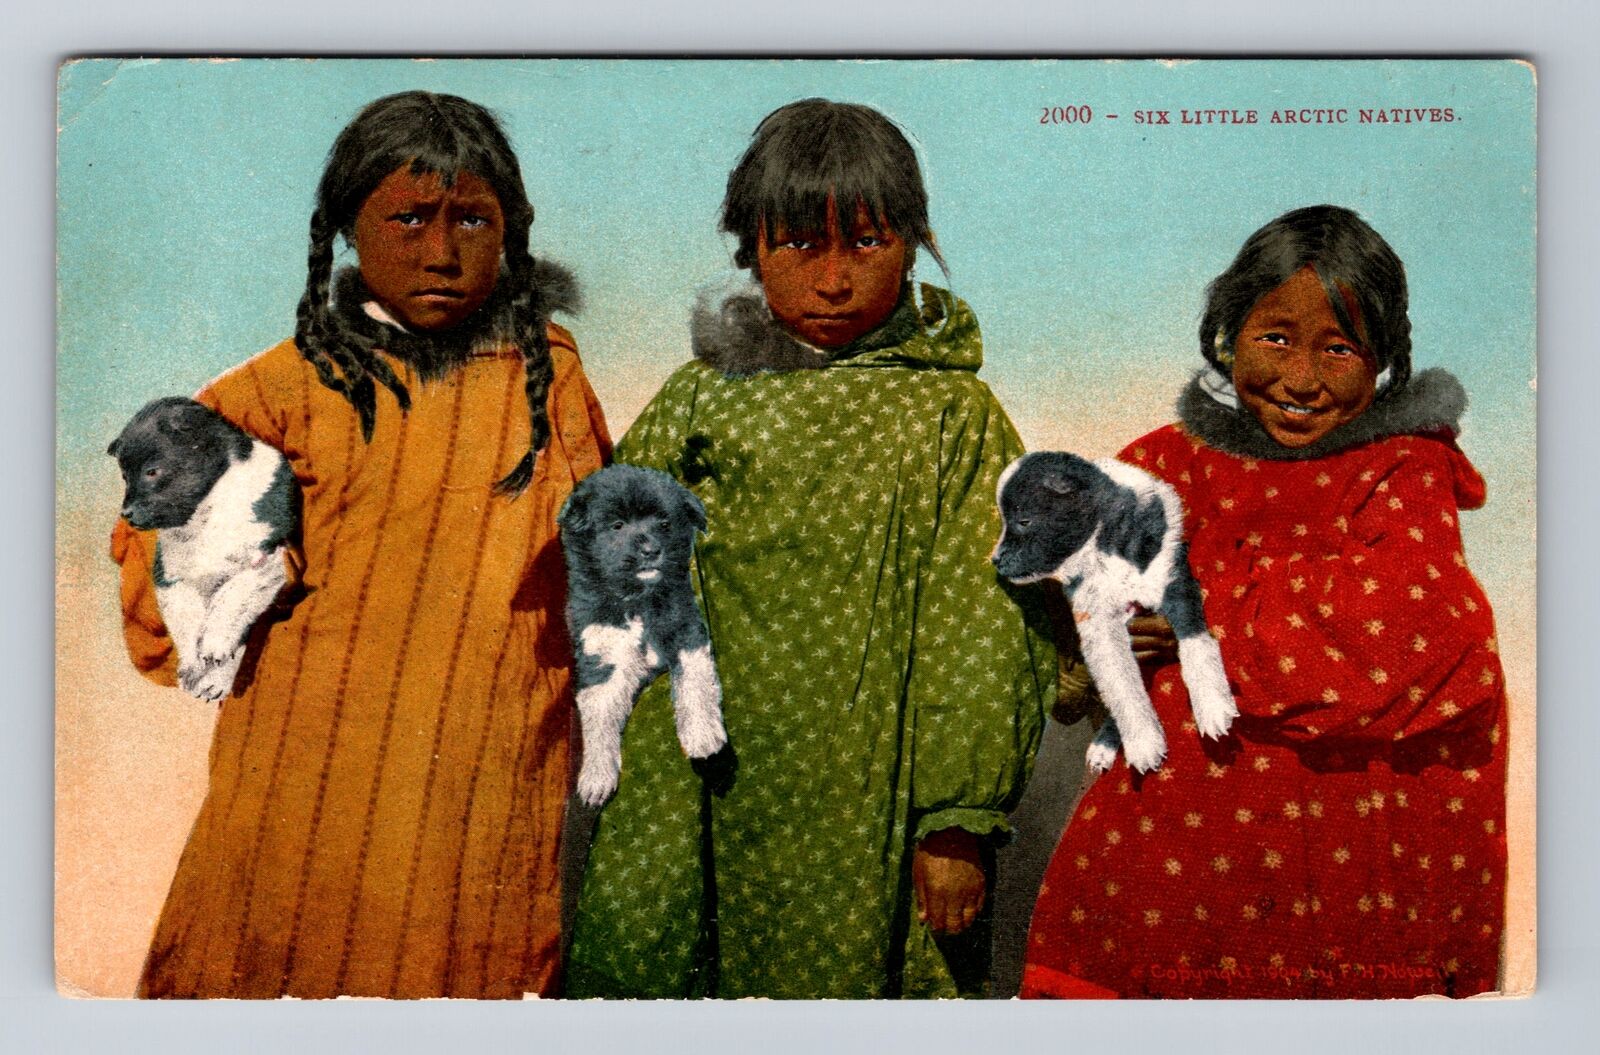 Six Little Arctic Children, People, Antique, Vintage Postcard